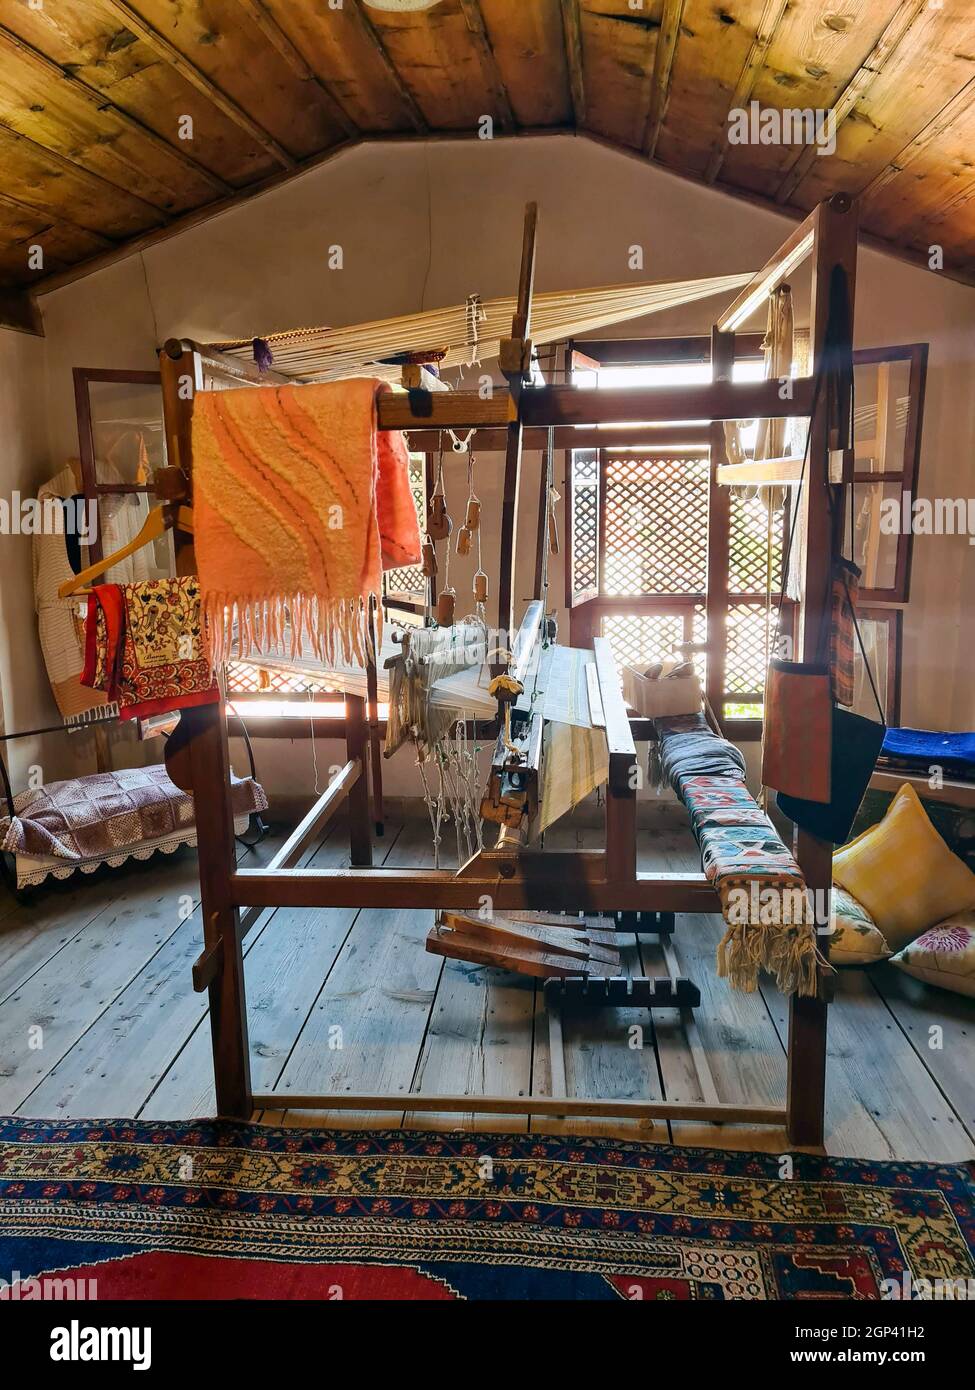 Toile de tissage de tapis dans l'ancienne maison turque traditionnelle. Banque D'Images